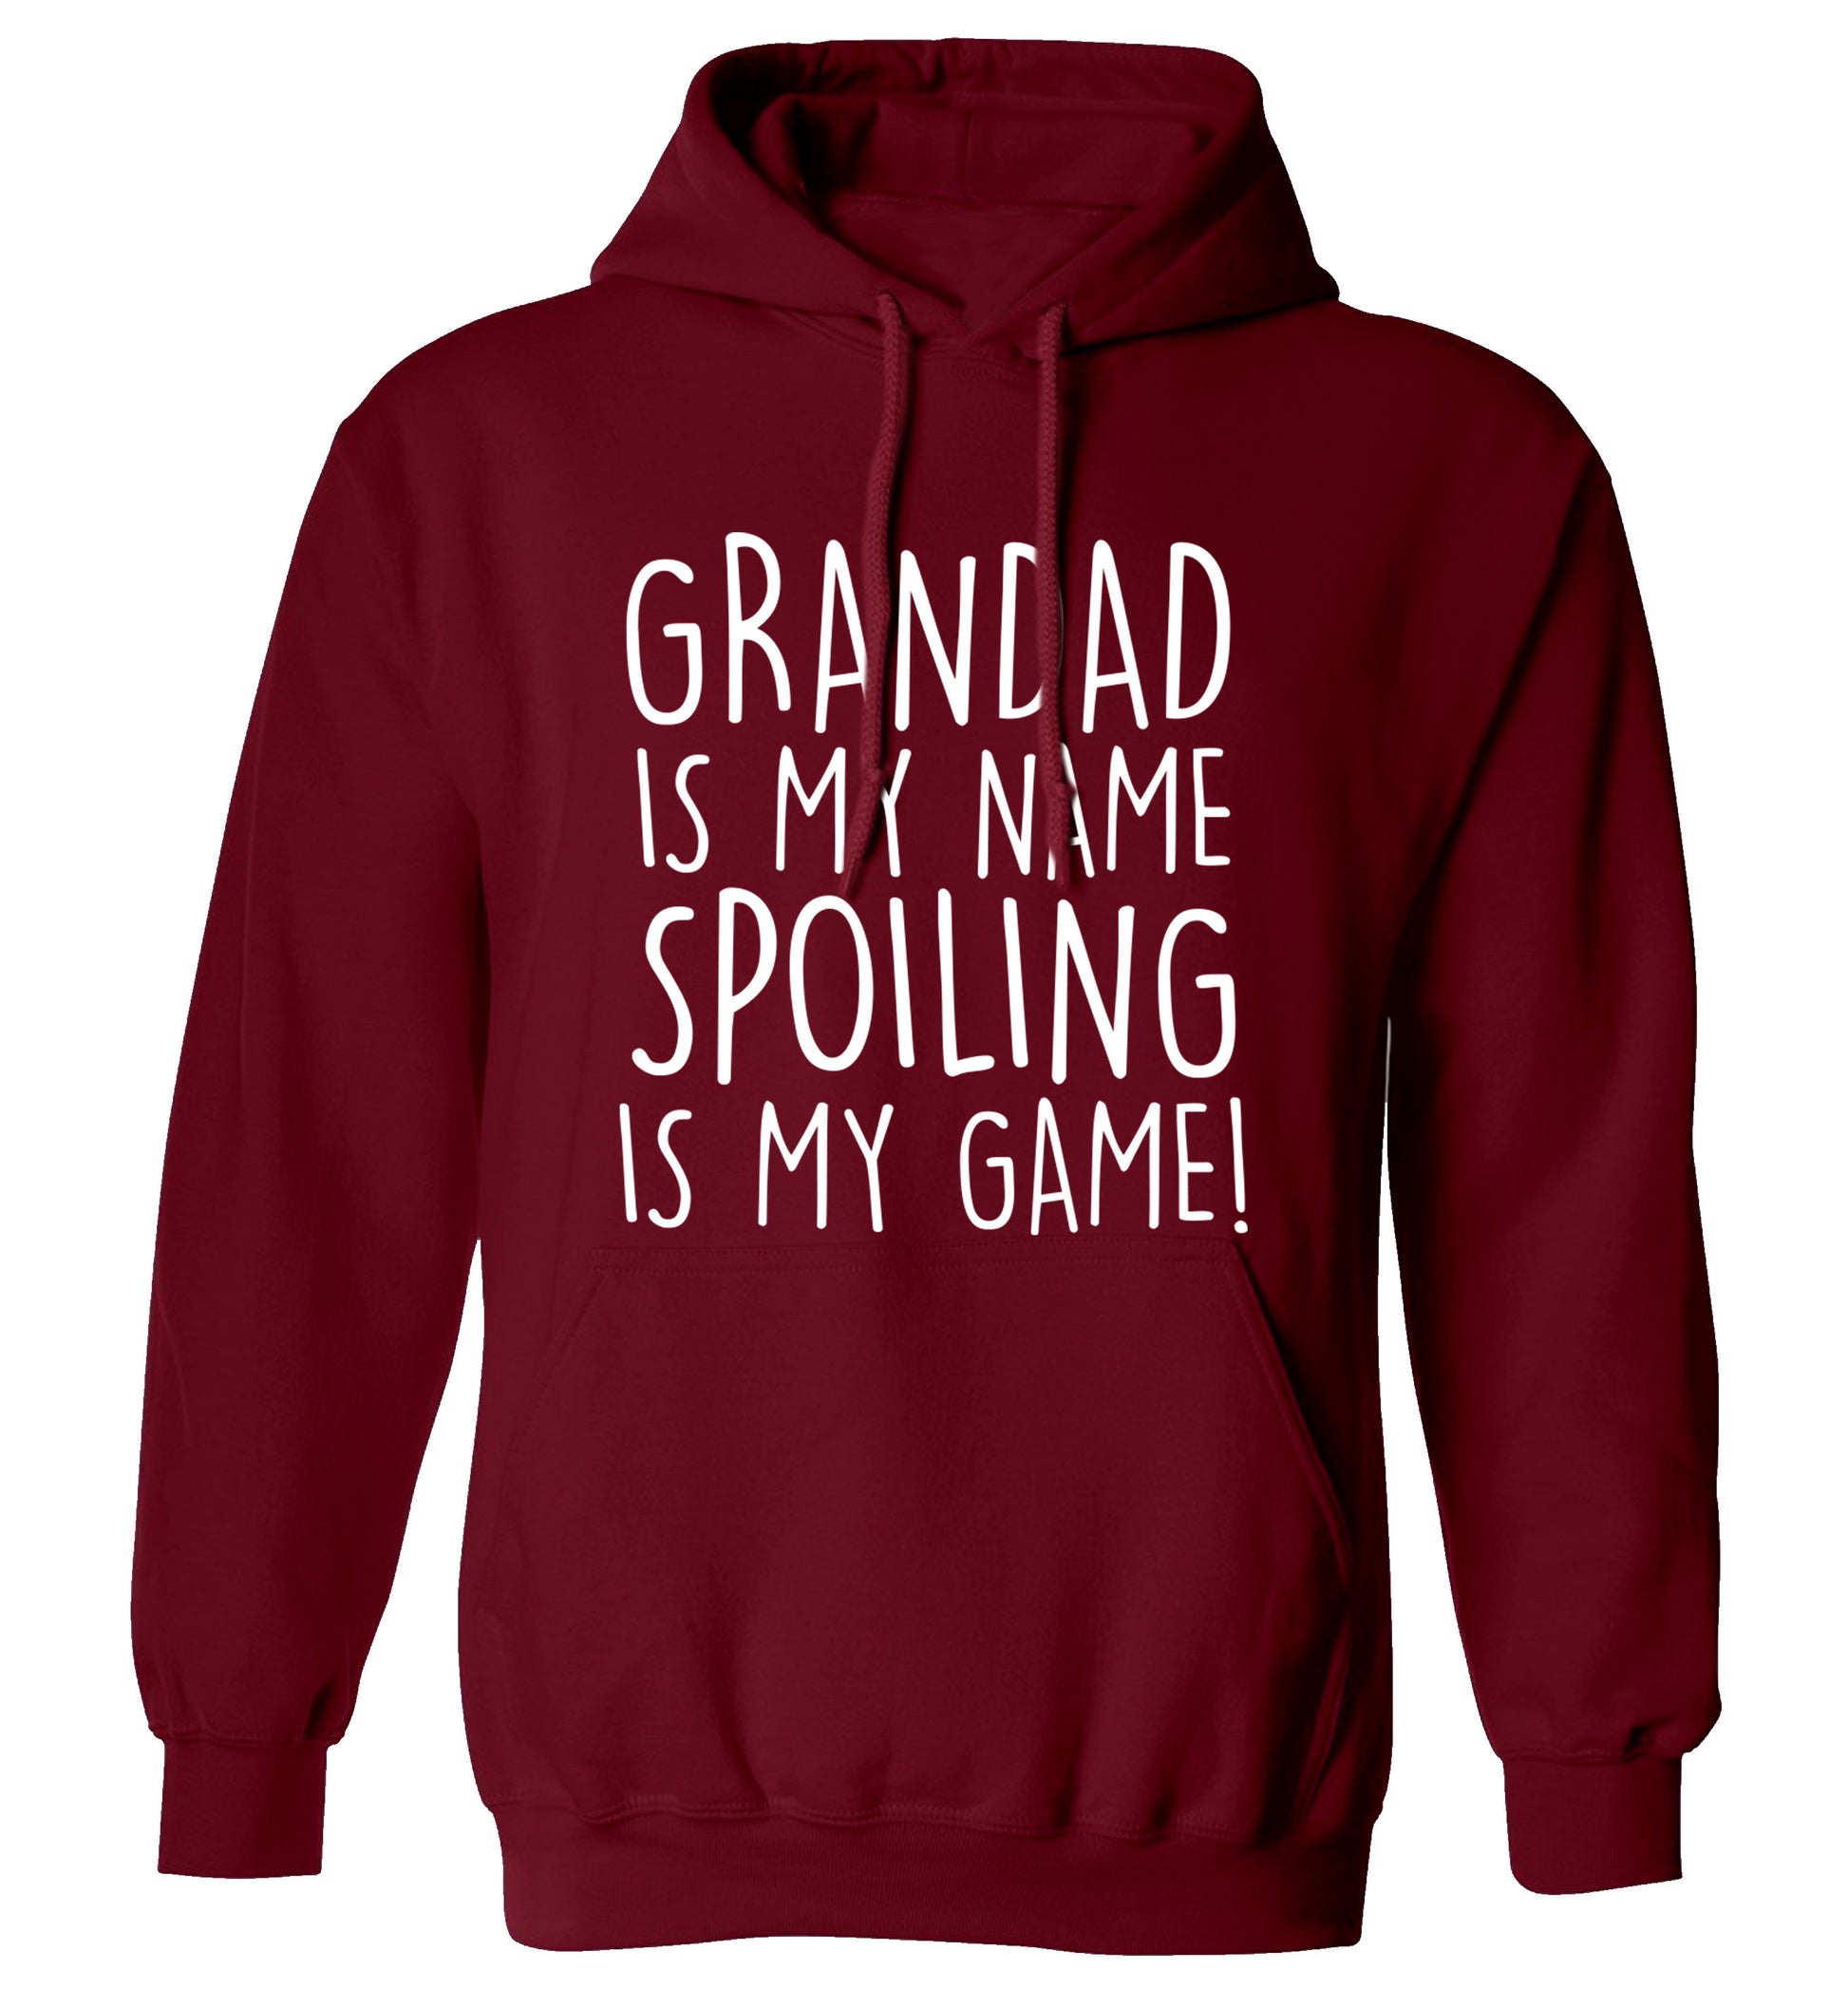 Grandad is my name, spoiling is my game adults unisex maroon hoodie 2XL